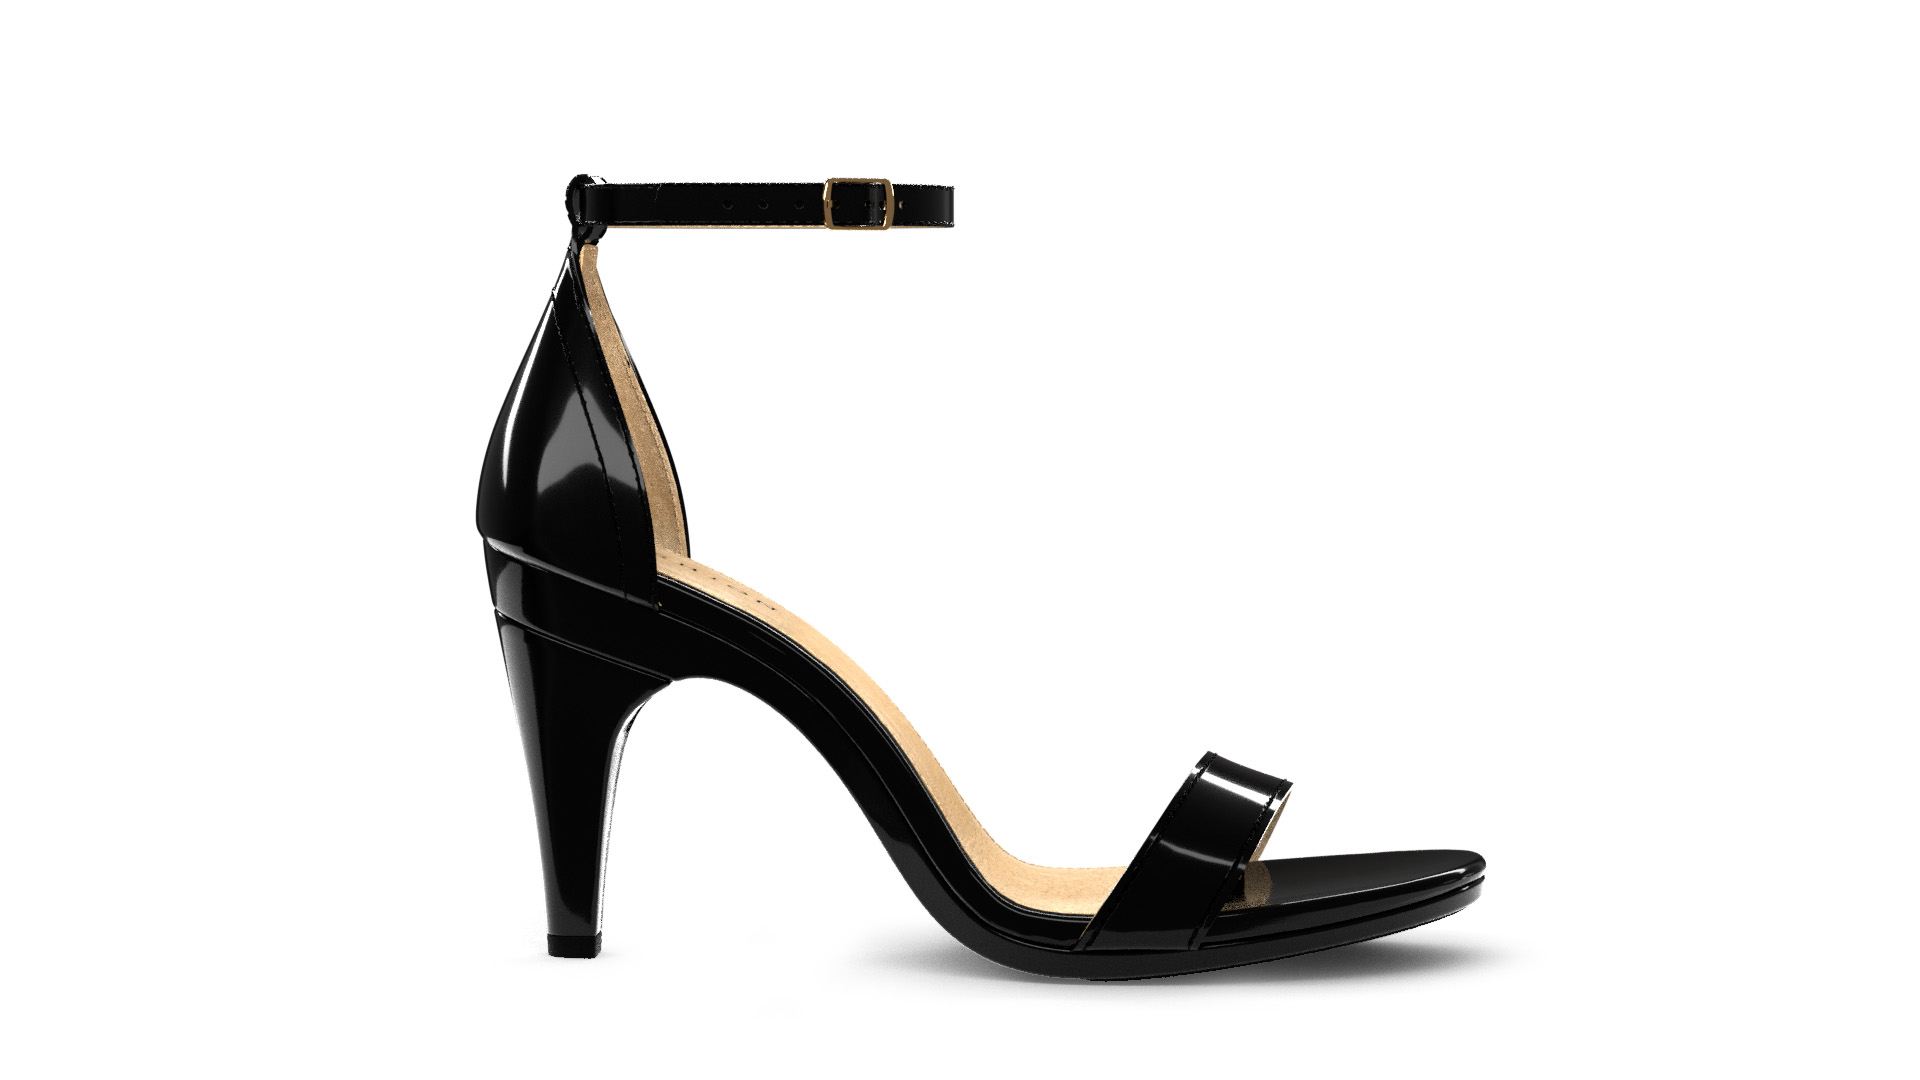 heels with design on heel